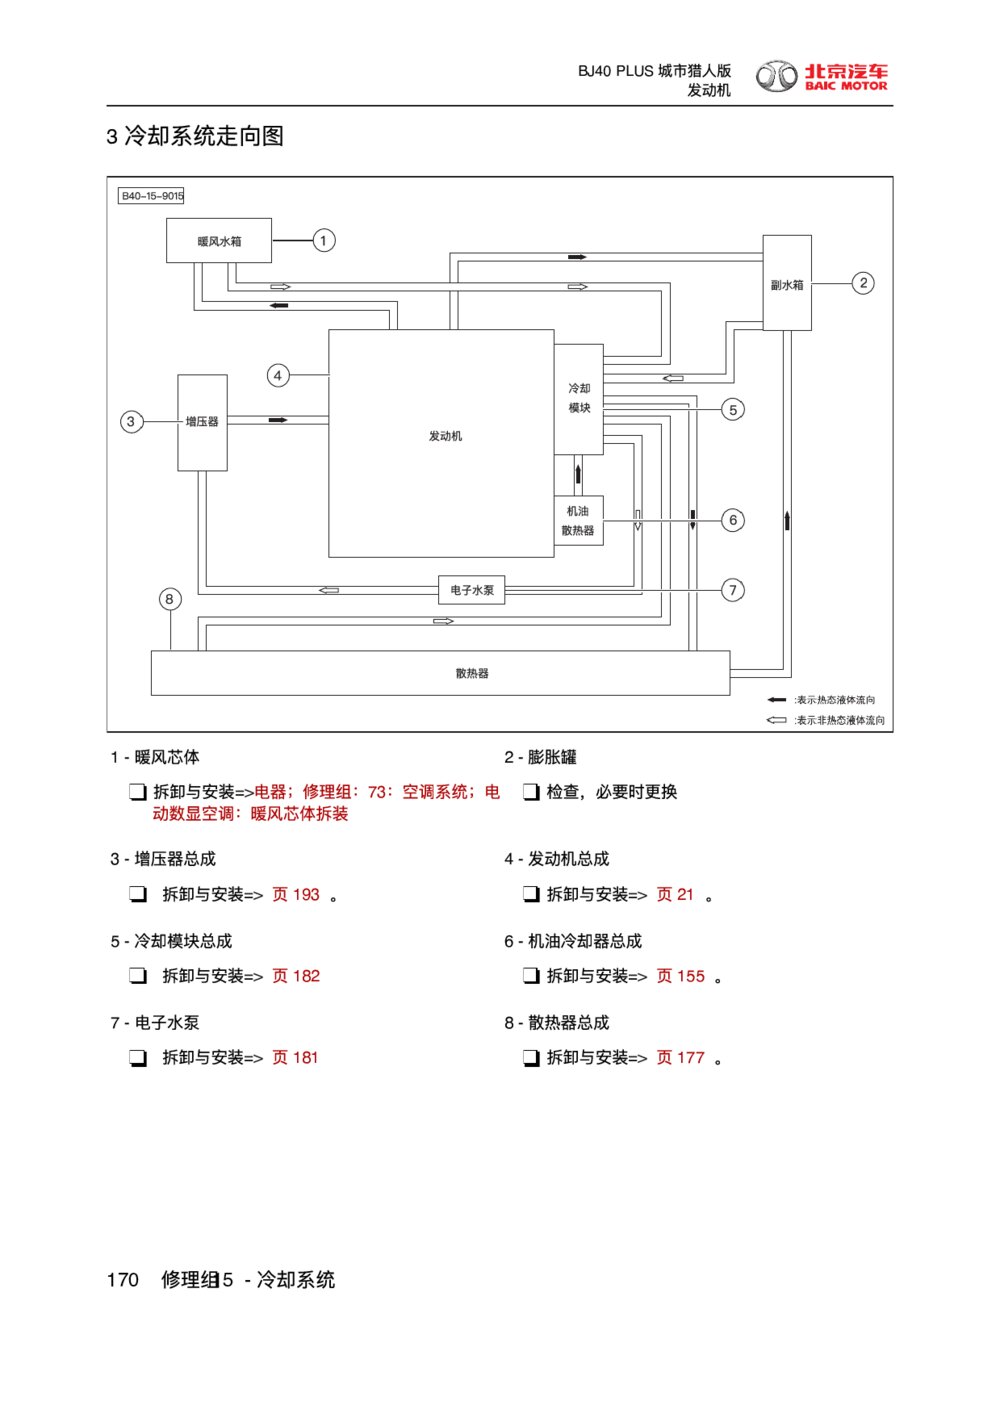 2018款北京BJ40 PLUS发动机冷却系统走向图1